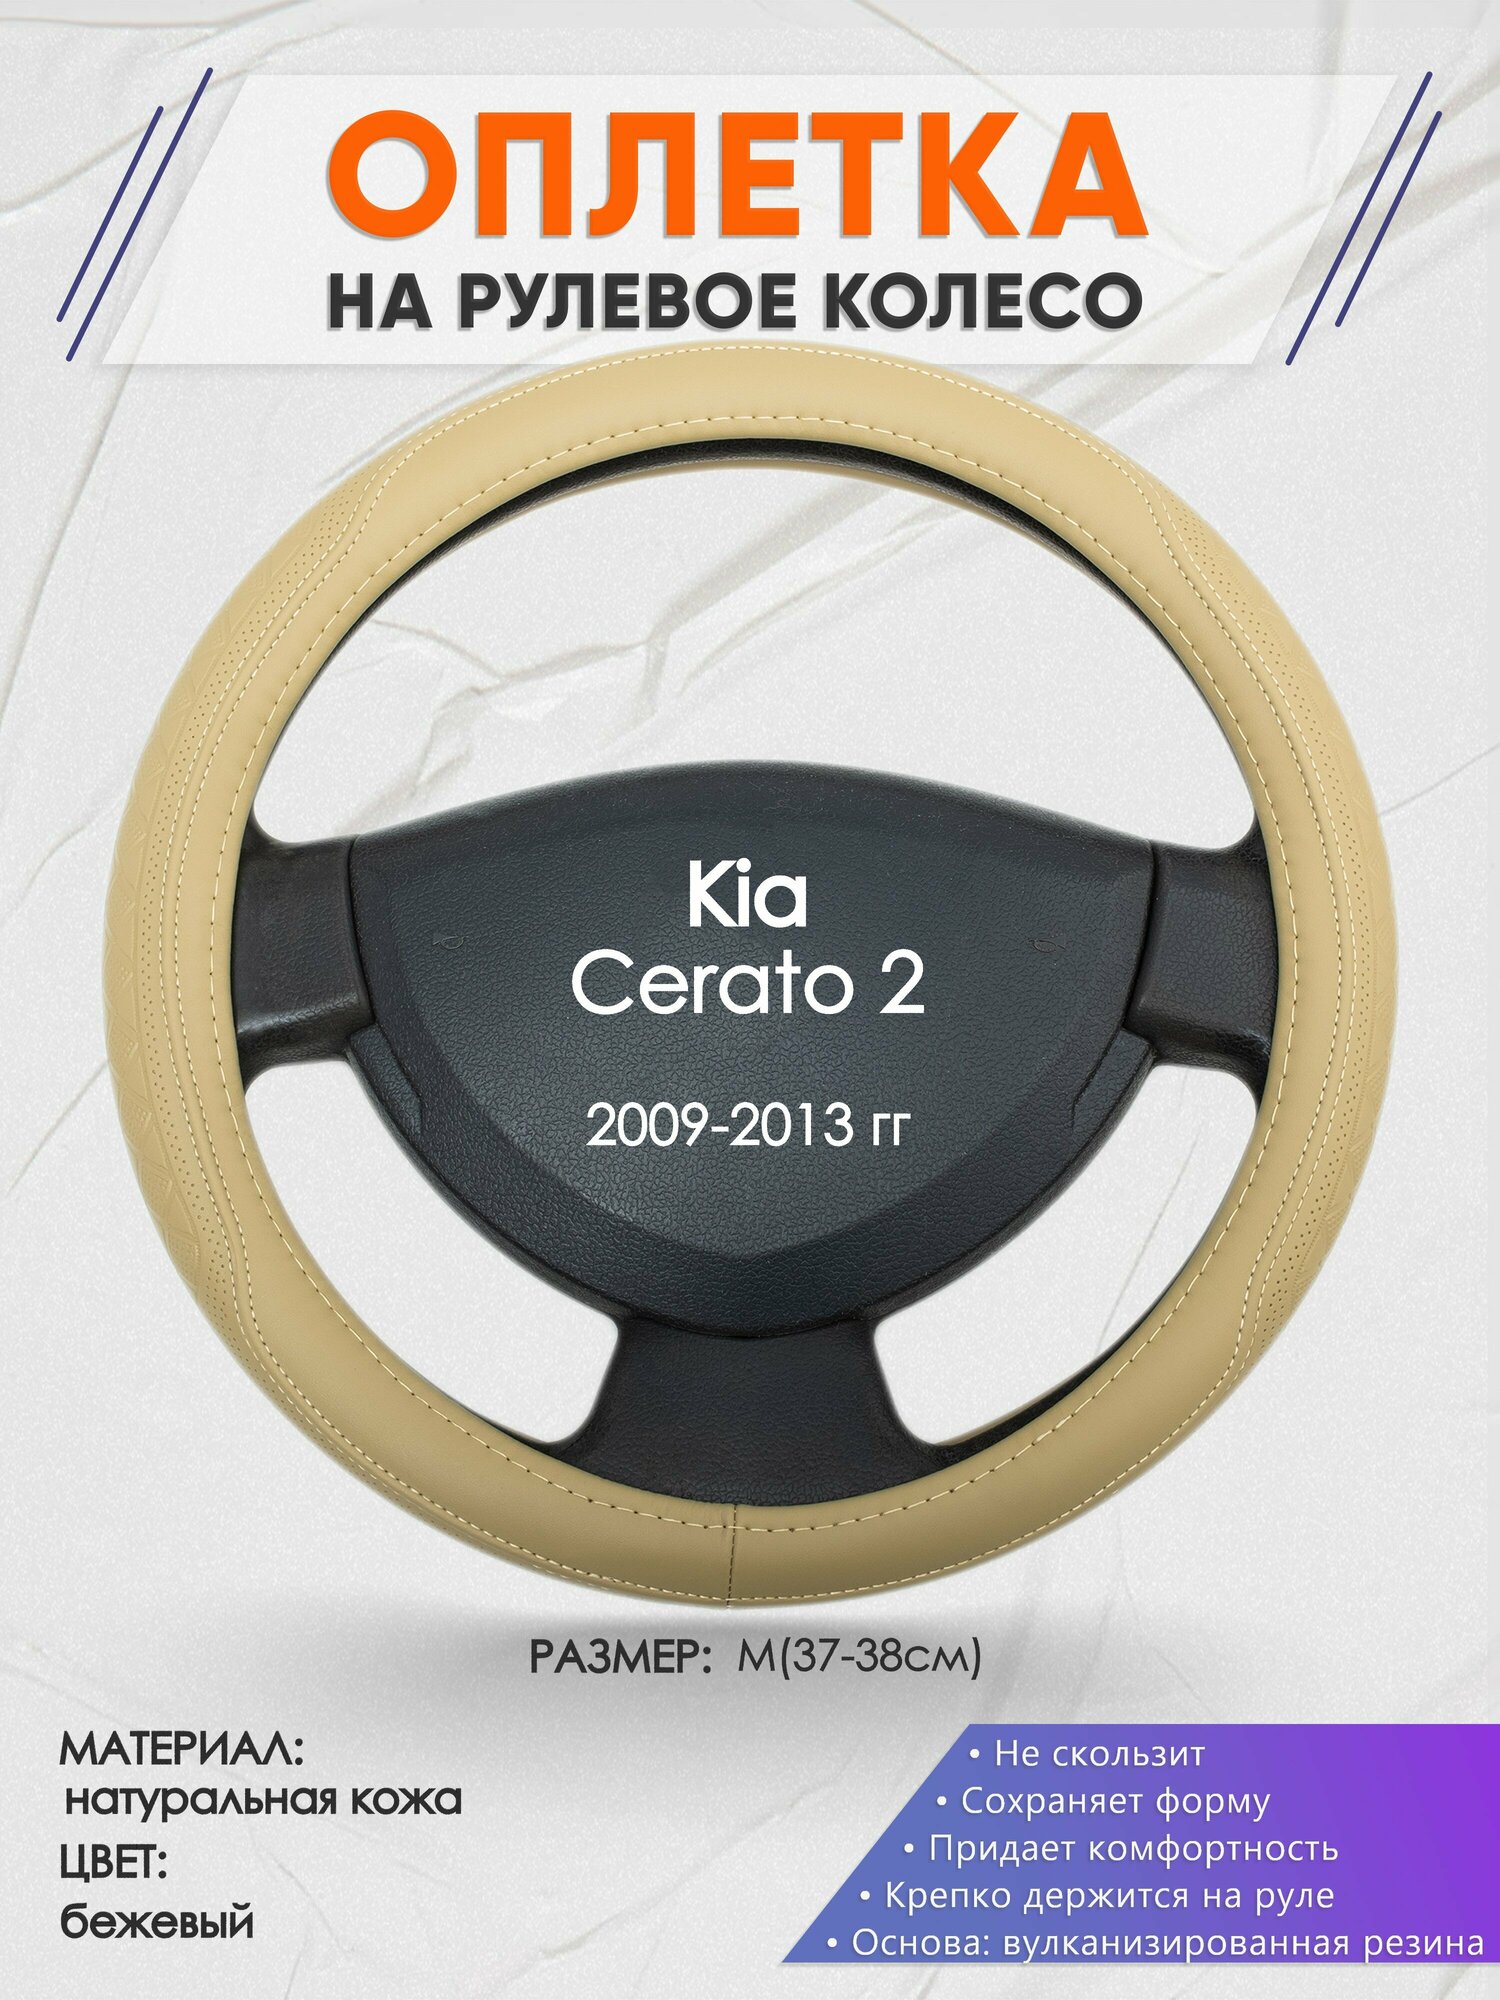 Оплетка на руль для Kia Cerato 2(Киа Церато 2) 2009-2013, M(37-38см), Натуральная кожа 91